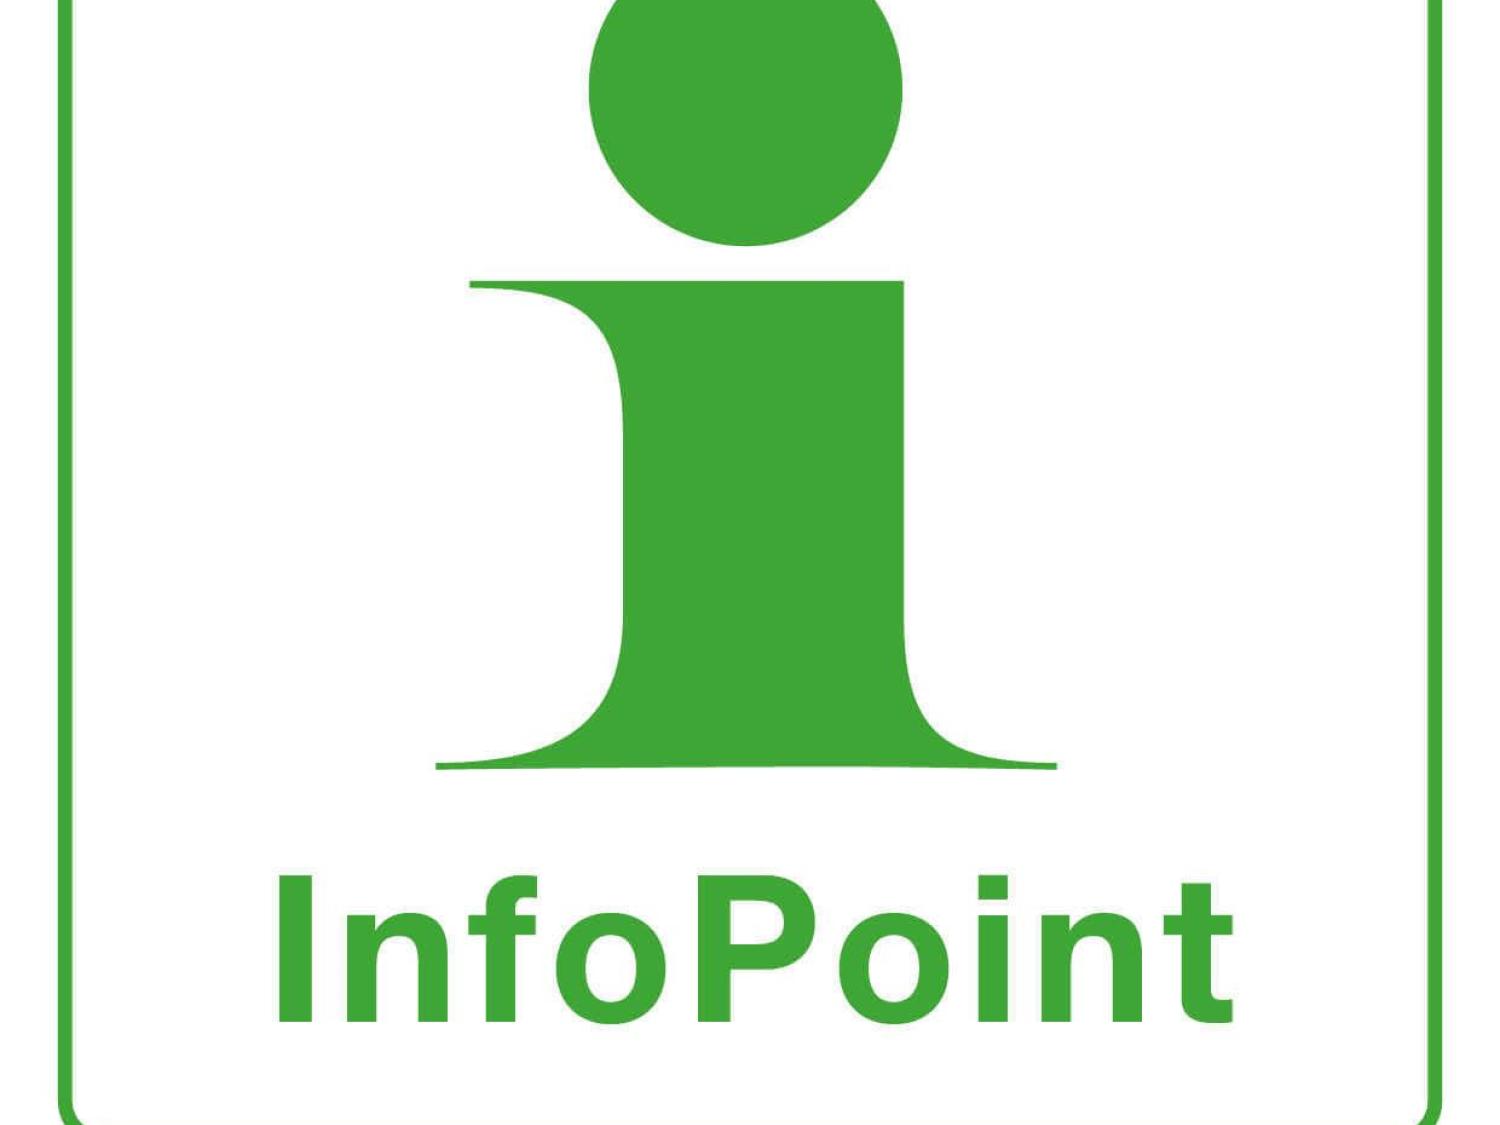 Logotype för Infopoint - grön text och symbol med vit bakgrund